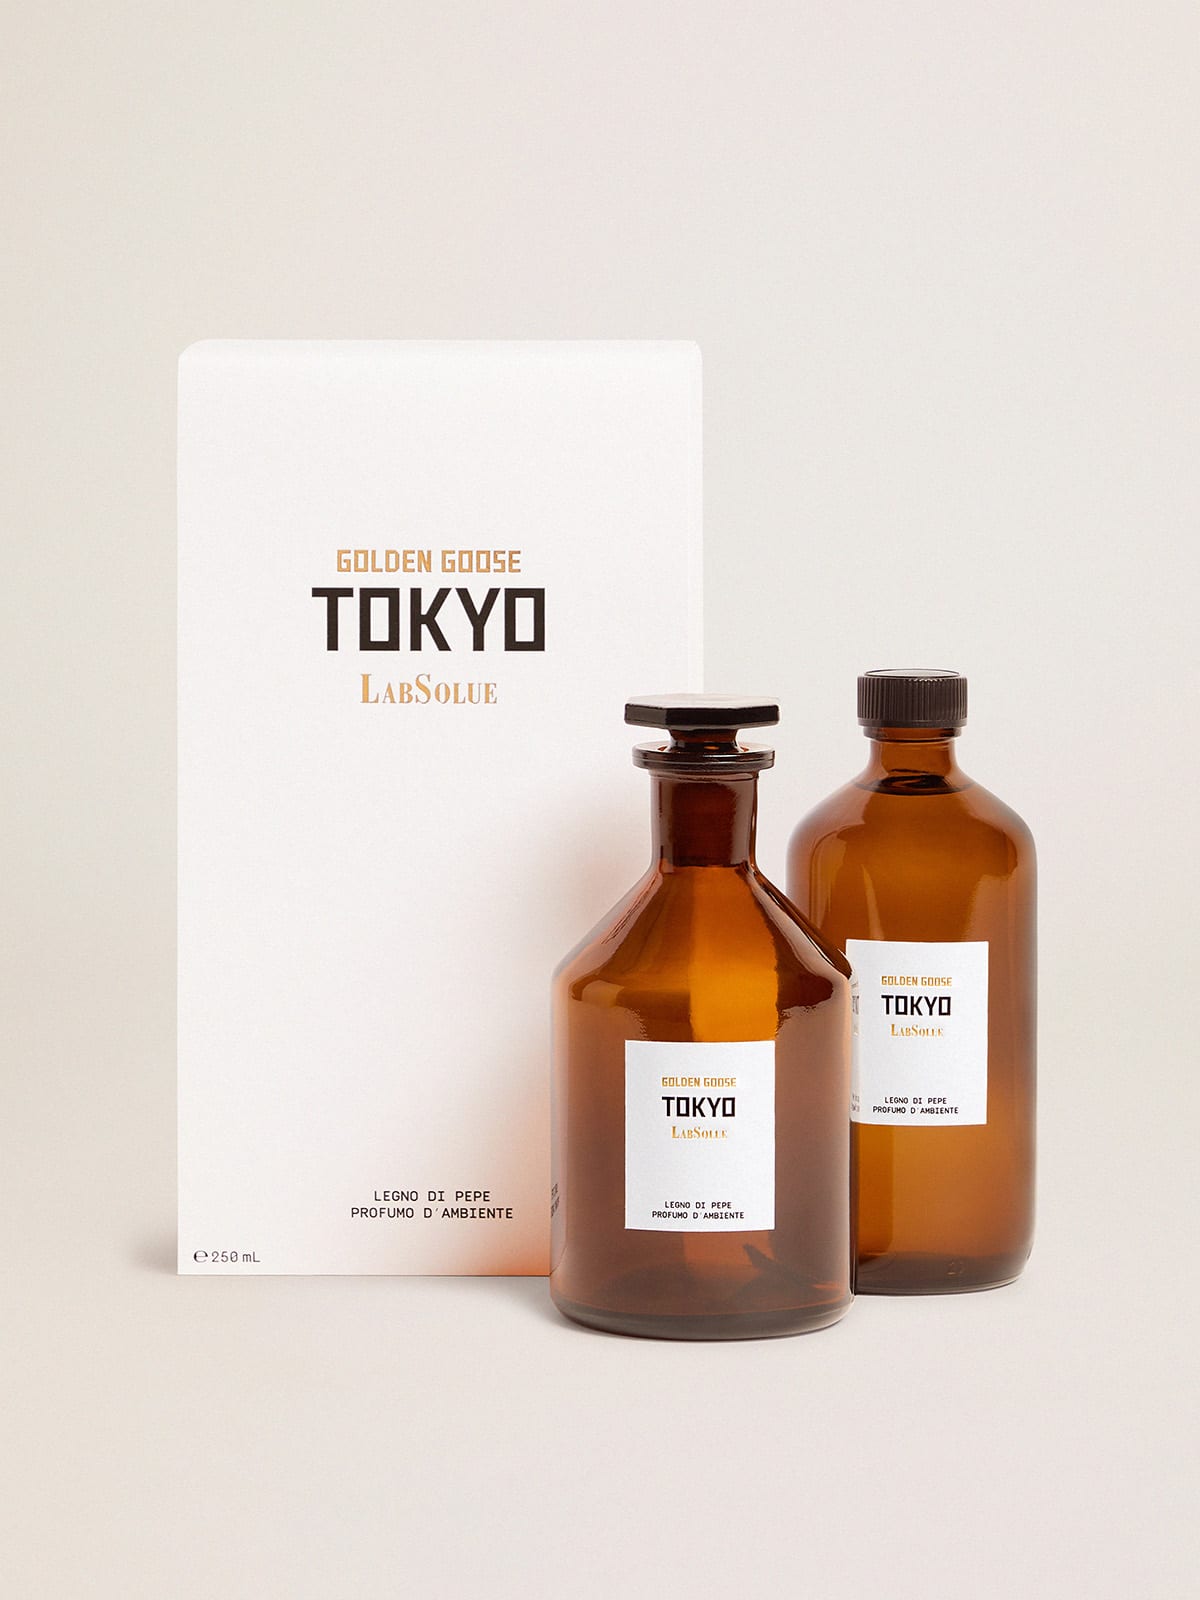 Golden Goose - Tokyo Essence Legno di Pepe Fragranza d'ambiente, 250 ml in 